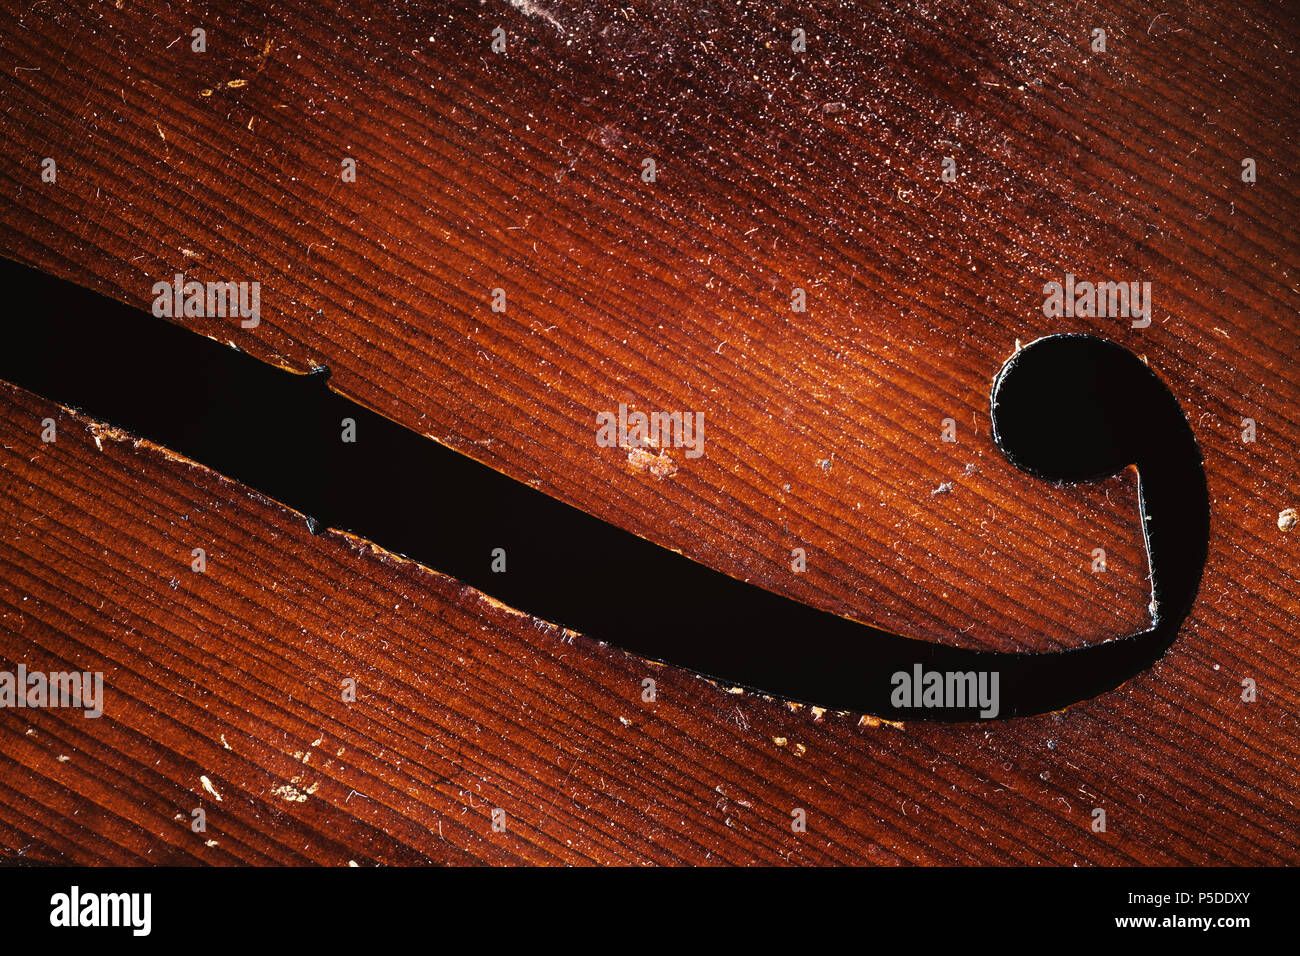 Détails d'un vieux violoncelle poussiéreux, vue rapprochée sur le corps les pièces en bois. Banque D'Images